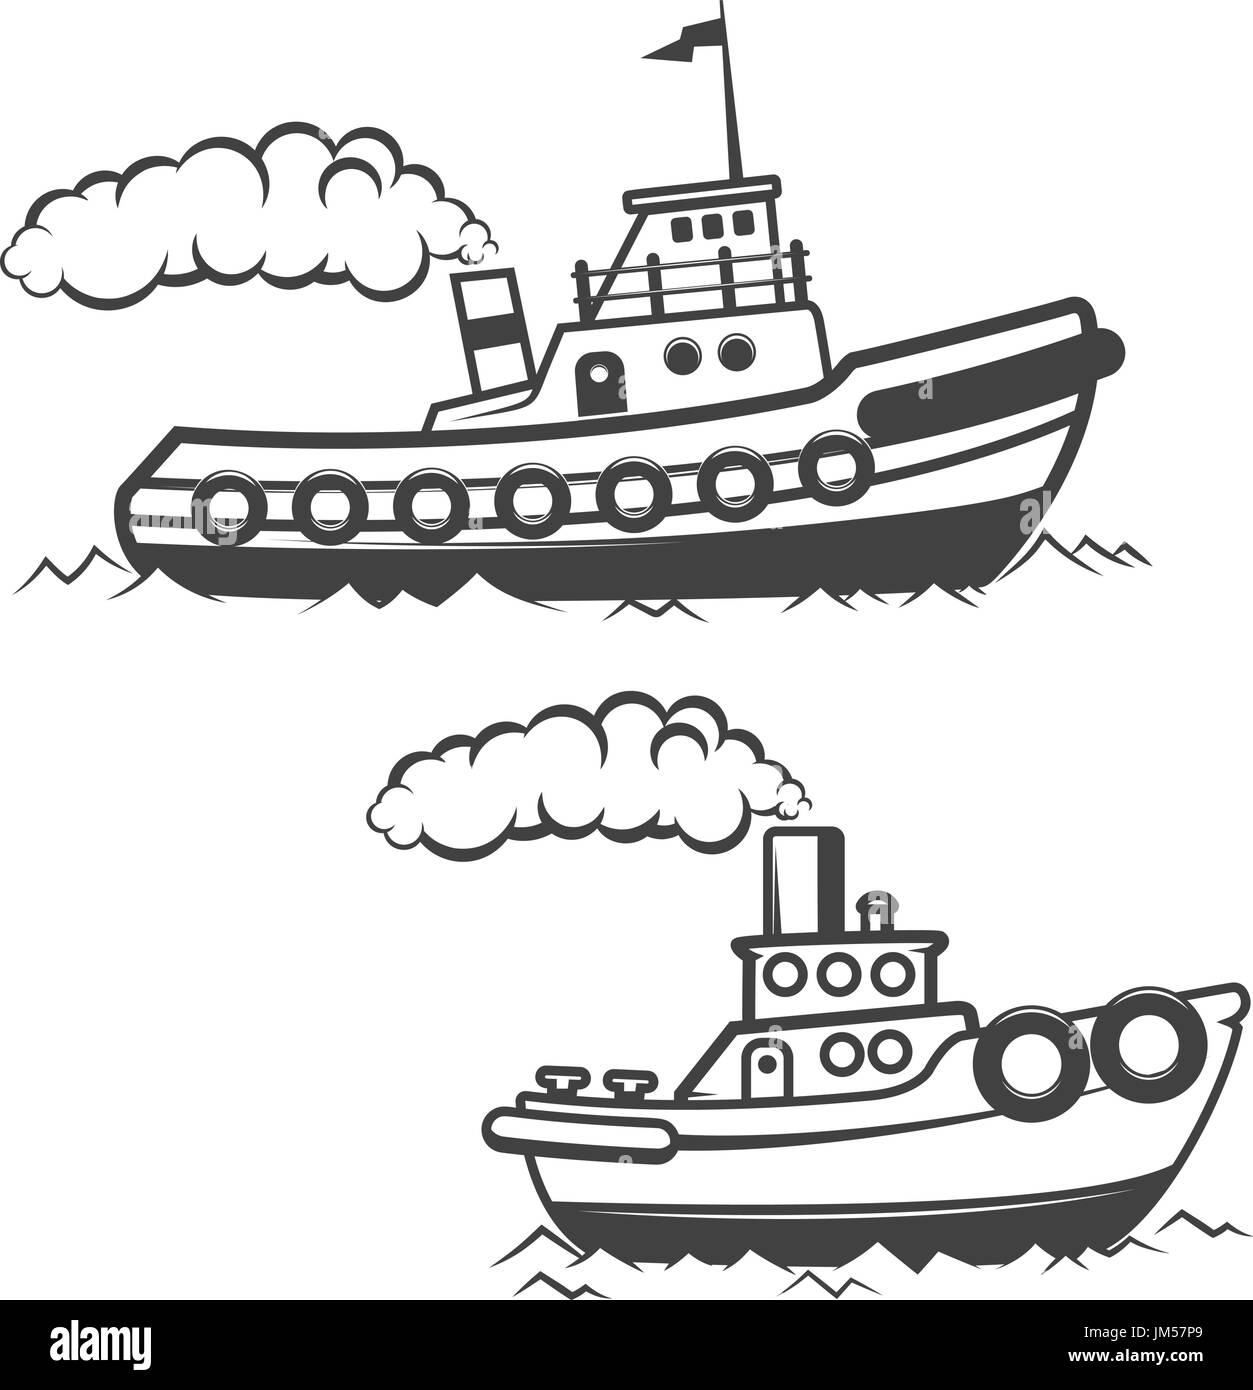 Ensemble de tugboat illustration isolé sur fond blanc. L'icône du bateau. Éléments de conception pour le label, logo, emblème, signe, marque de marque. Vector illustration. Illustration de Vecteur